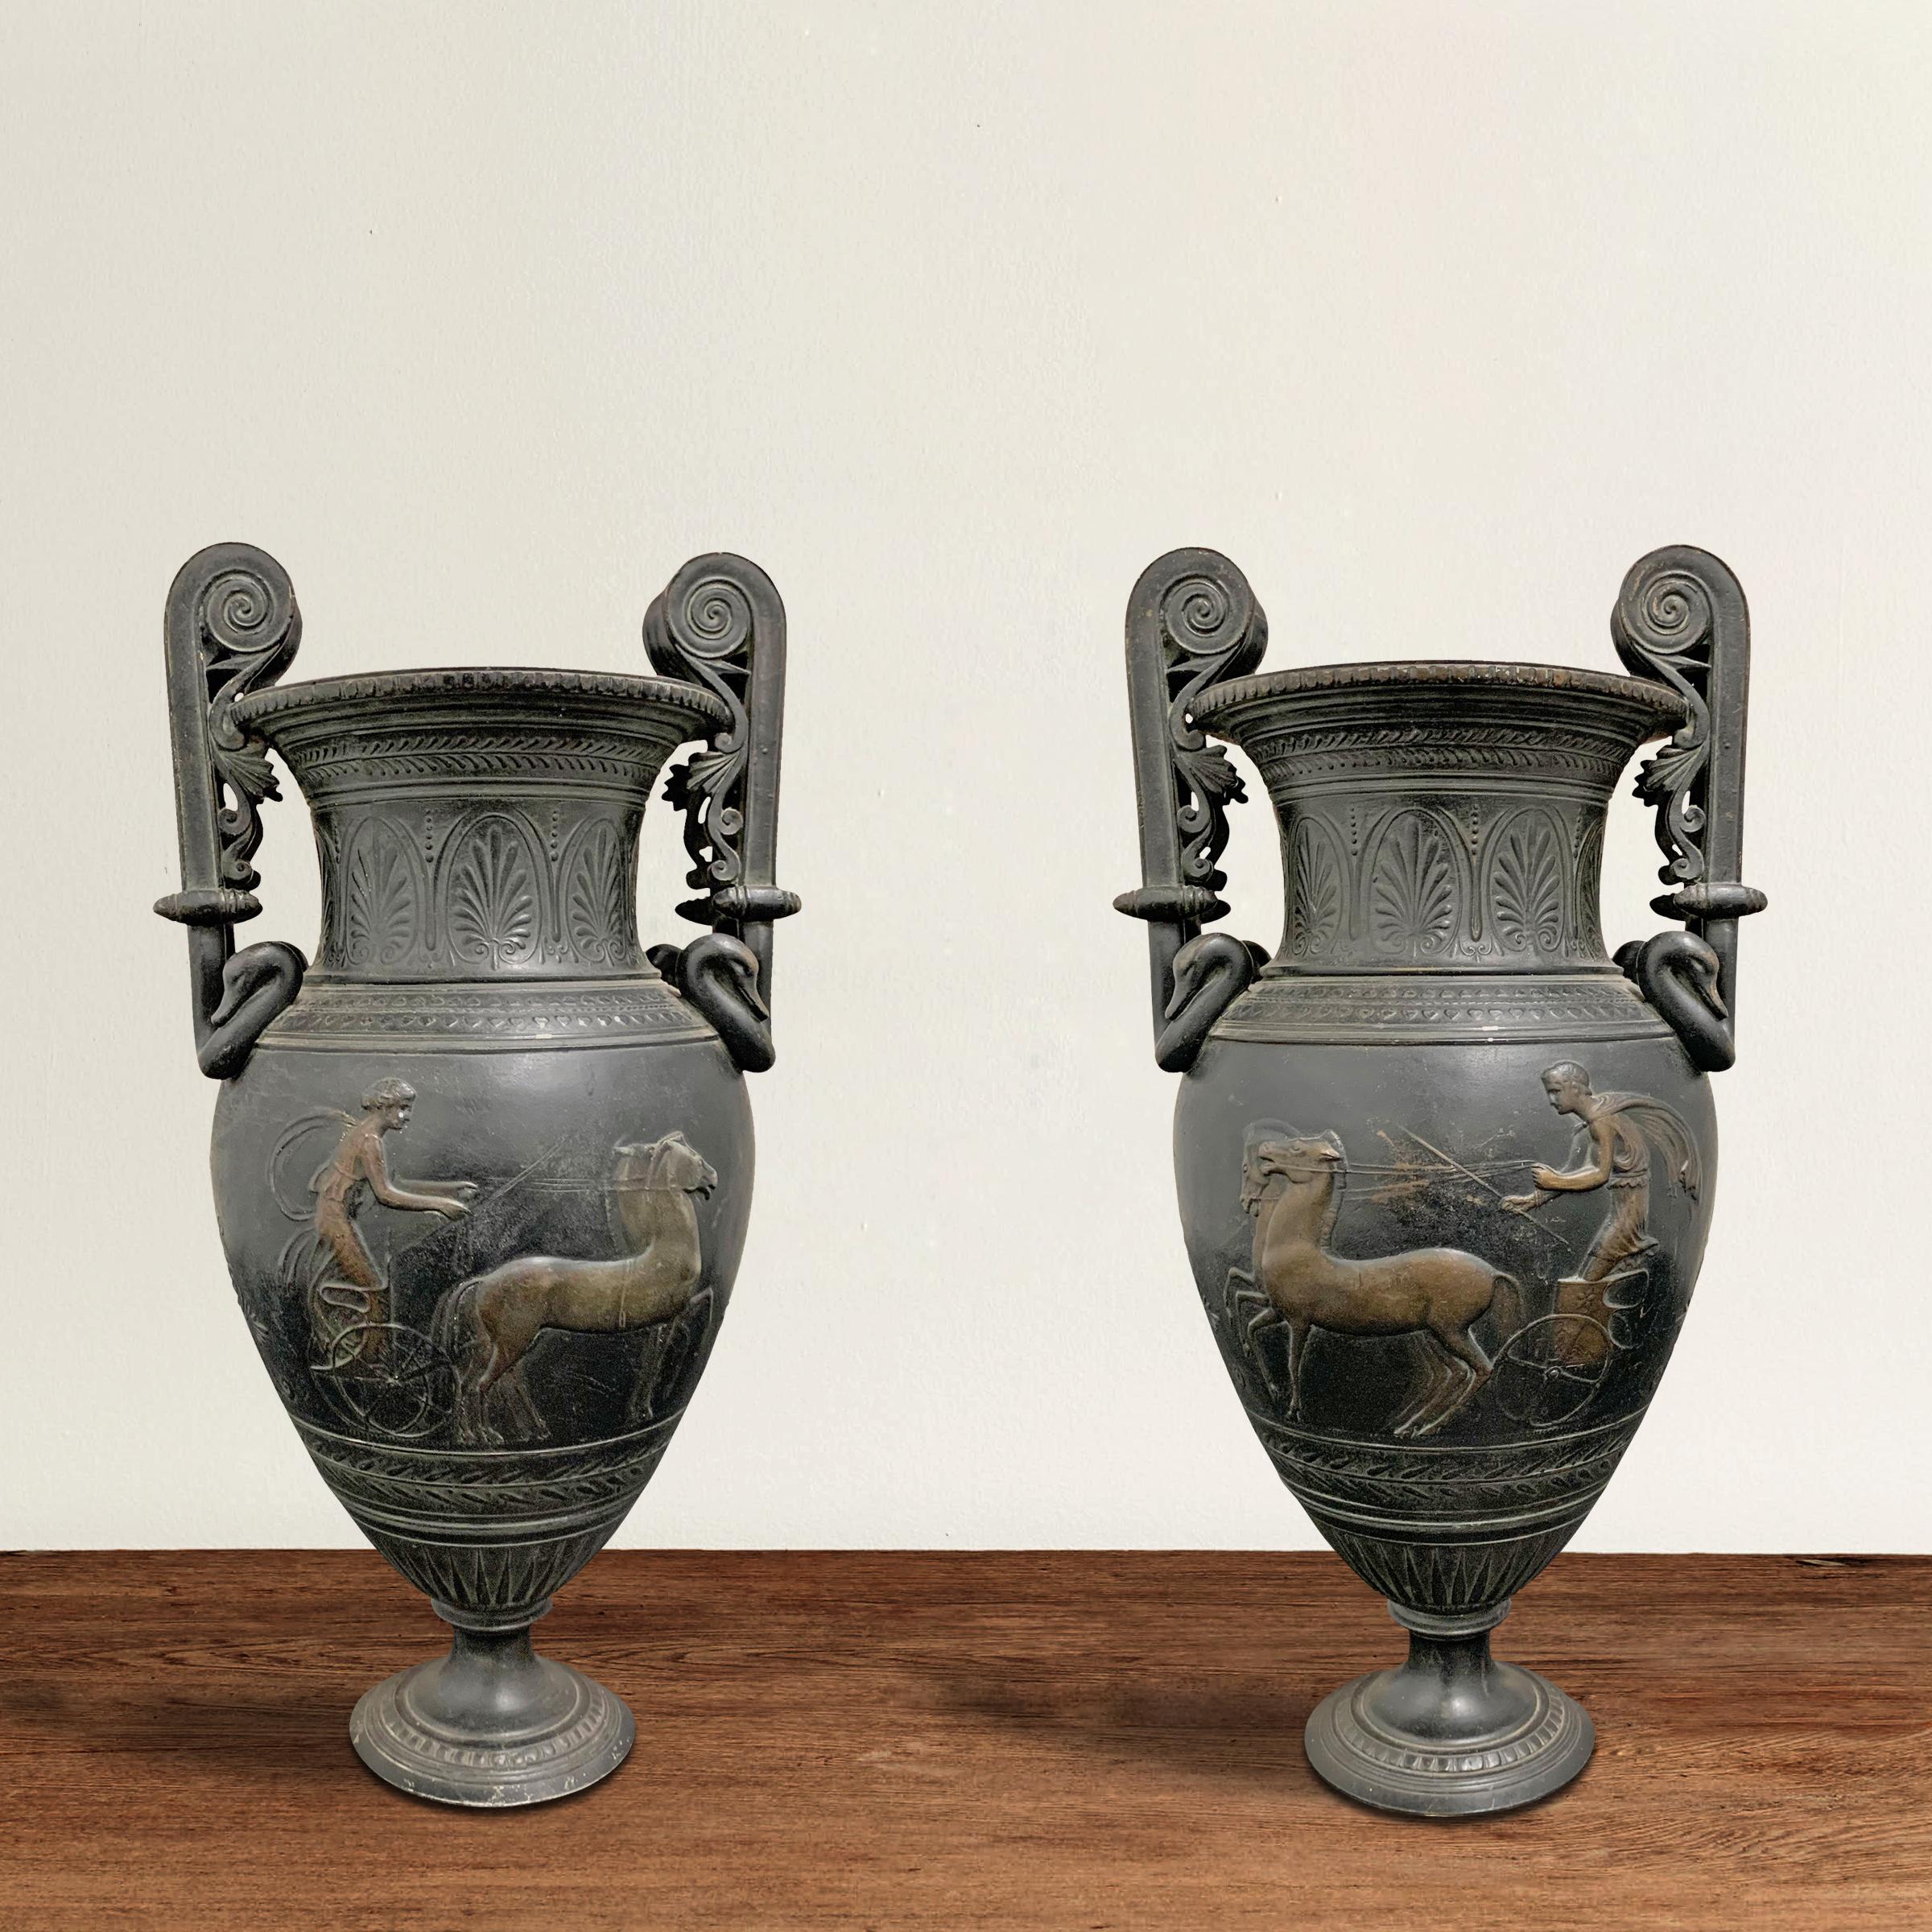 Ein phänomenales Paar französischer Bronzegussurnen aus dem frühen 20. Jahrhundert im römischen Stil mit Volutengriffen, die mit Gänseköpfen verziert sind, und einem Fries im Flachrelief, der einen Mann und eine Frau darstellt, die sich in von